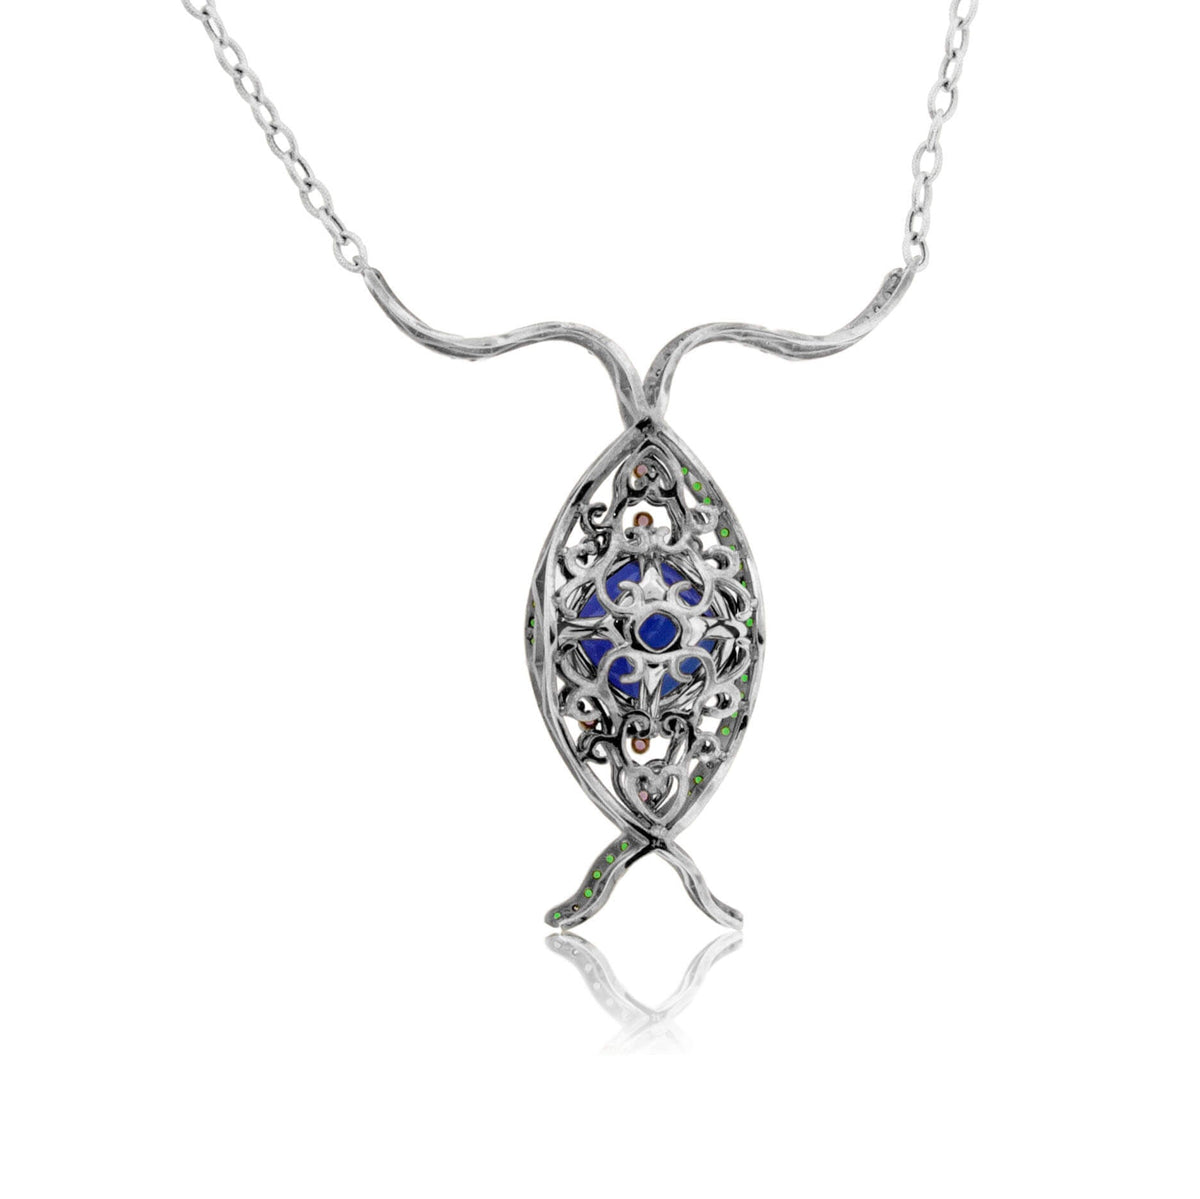 Tanzanite, Tsvaroite & Rhodolite Garnet Custom Pendant w/Chain - Park City Jewelers